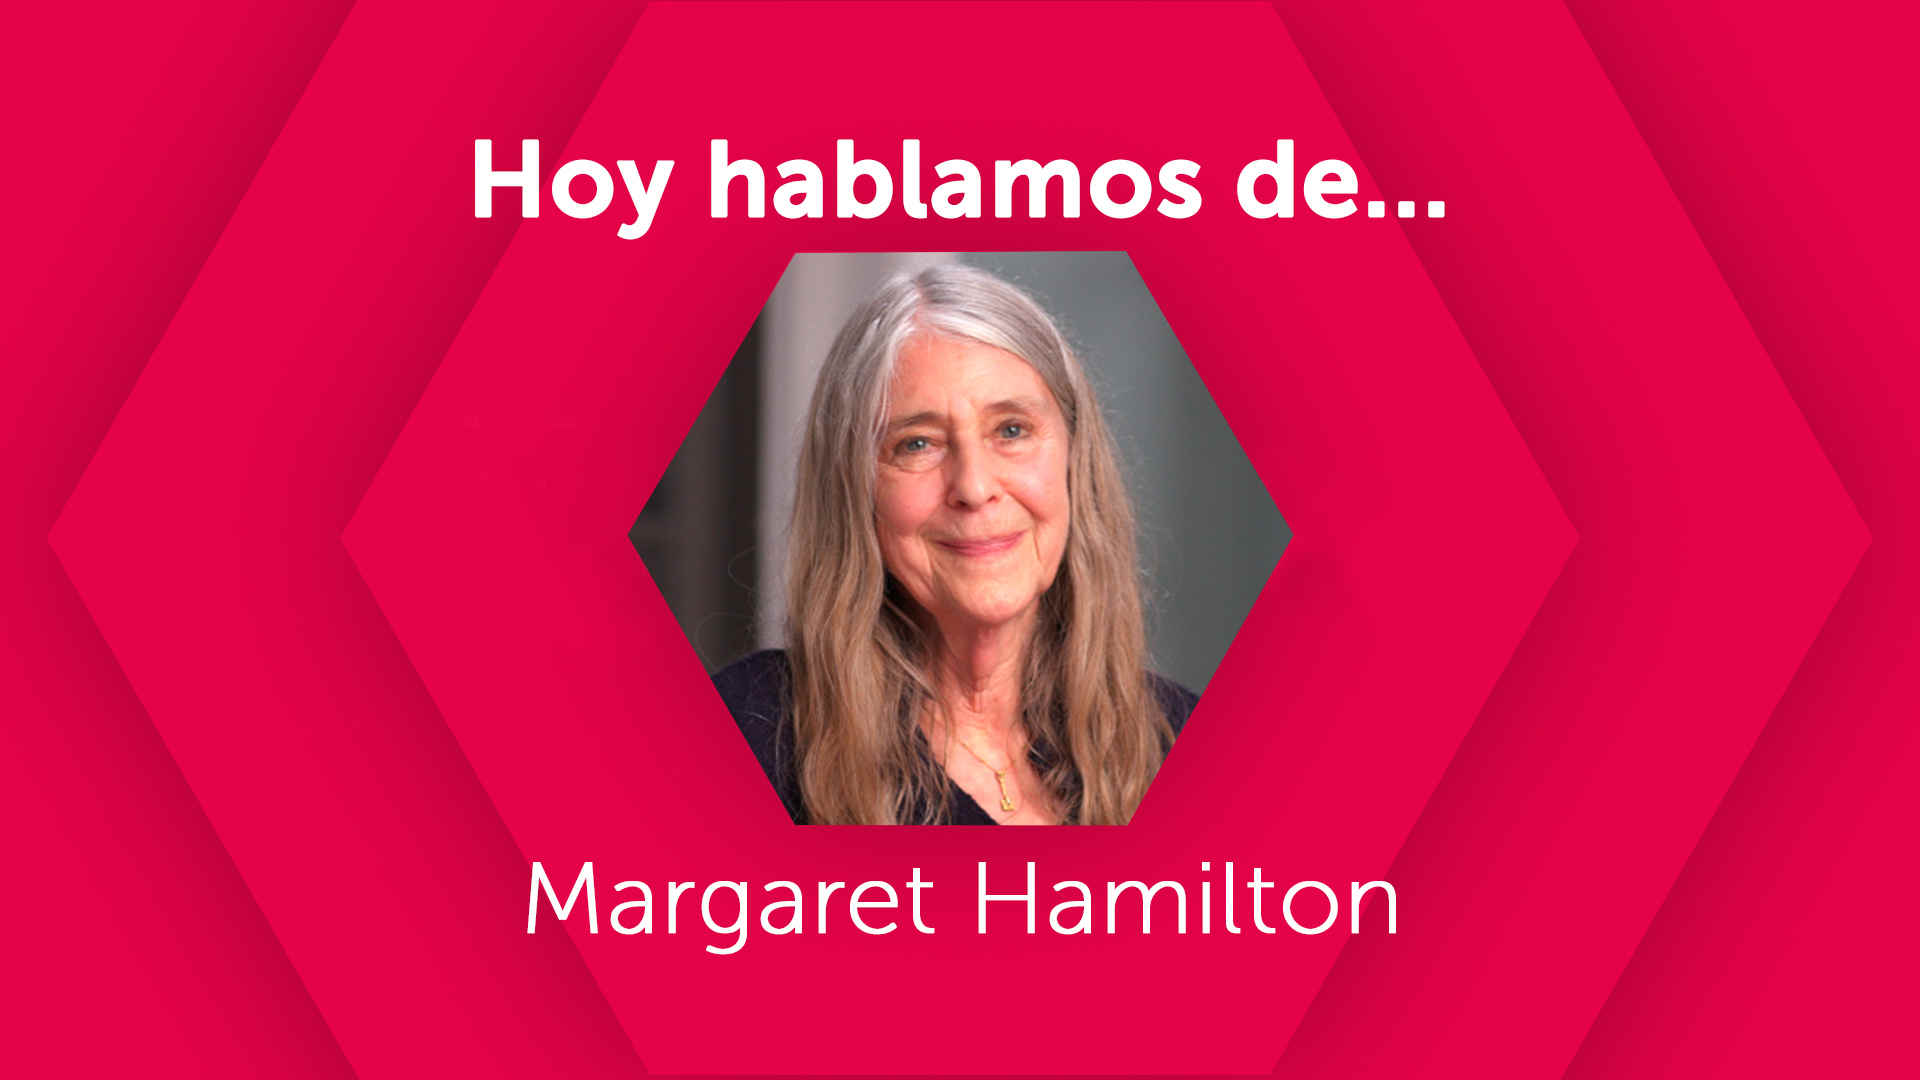 Hoy hablamos de Margaret Hamilton